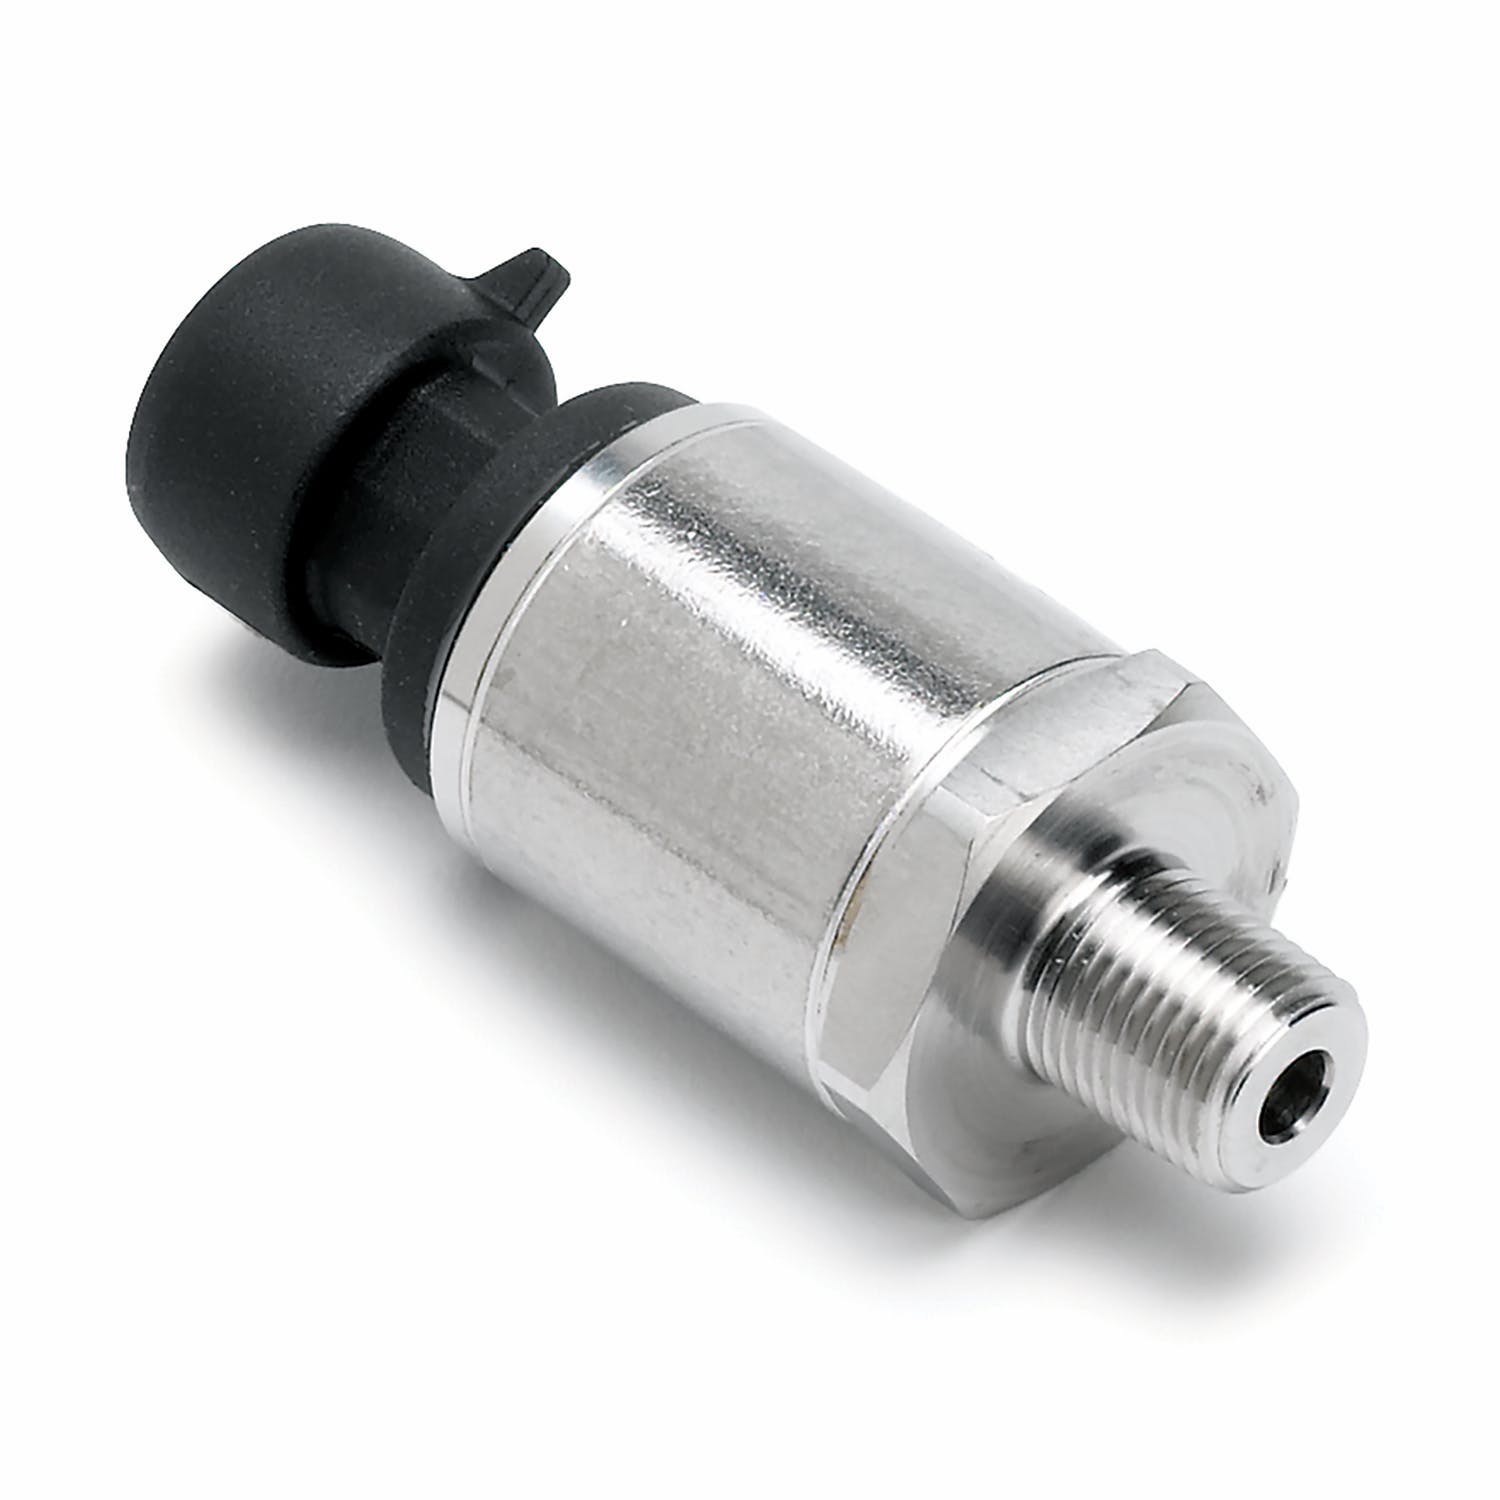 AutoMeter Products 4867 Gauge; Brake Pressure; 2 5/8in.; 1600psi; Digital Stepper Motor; Carbon Fiber